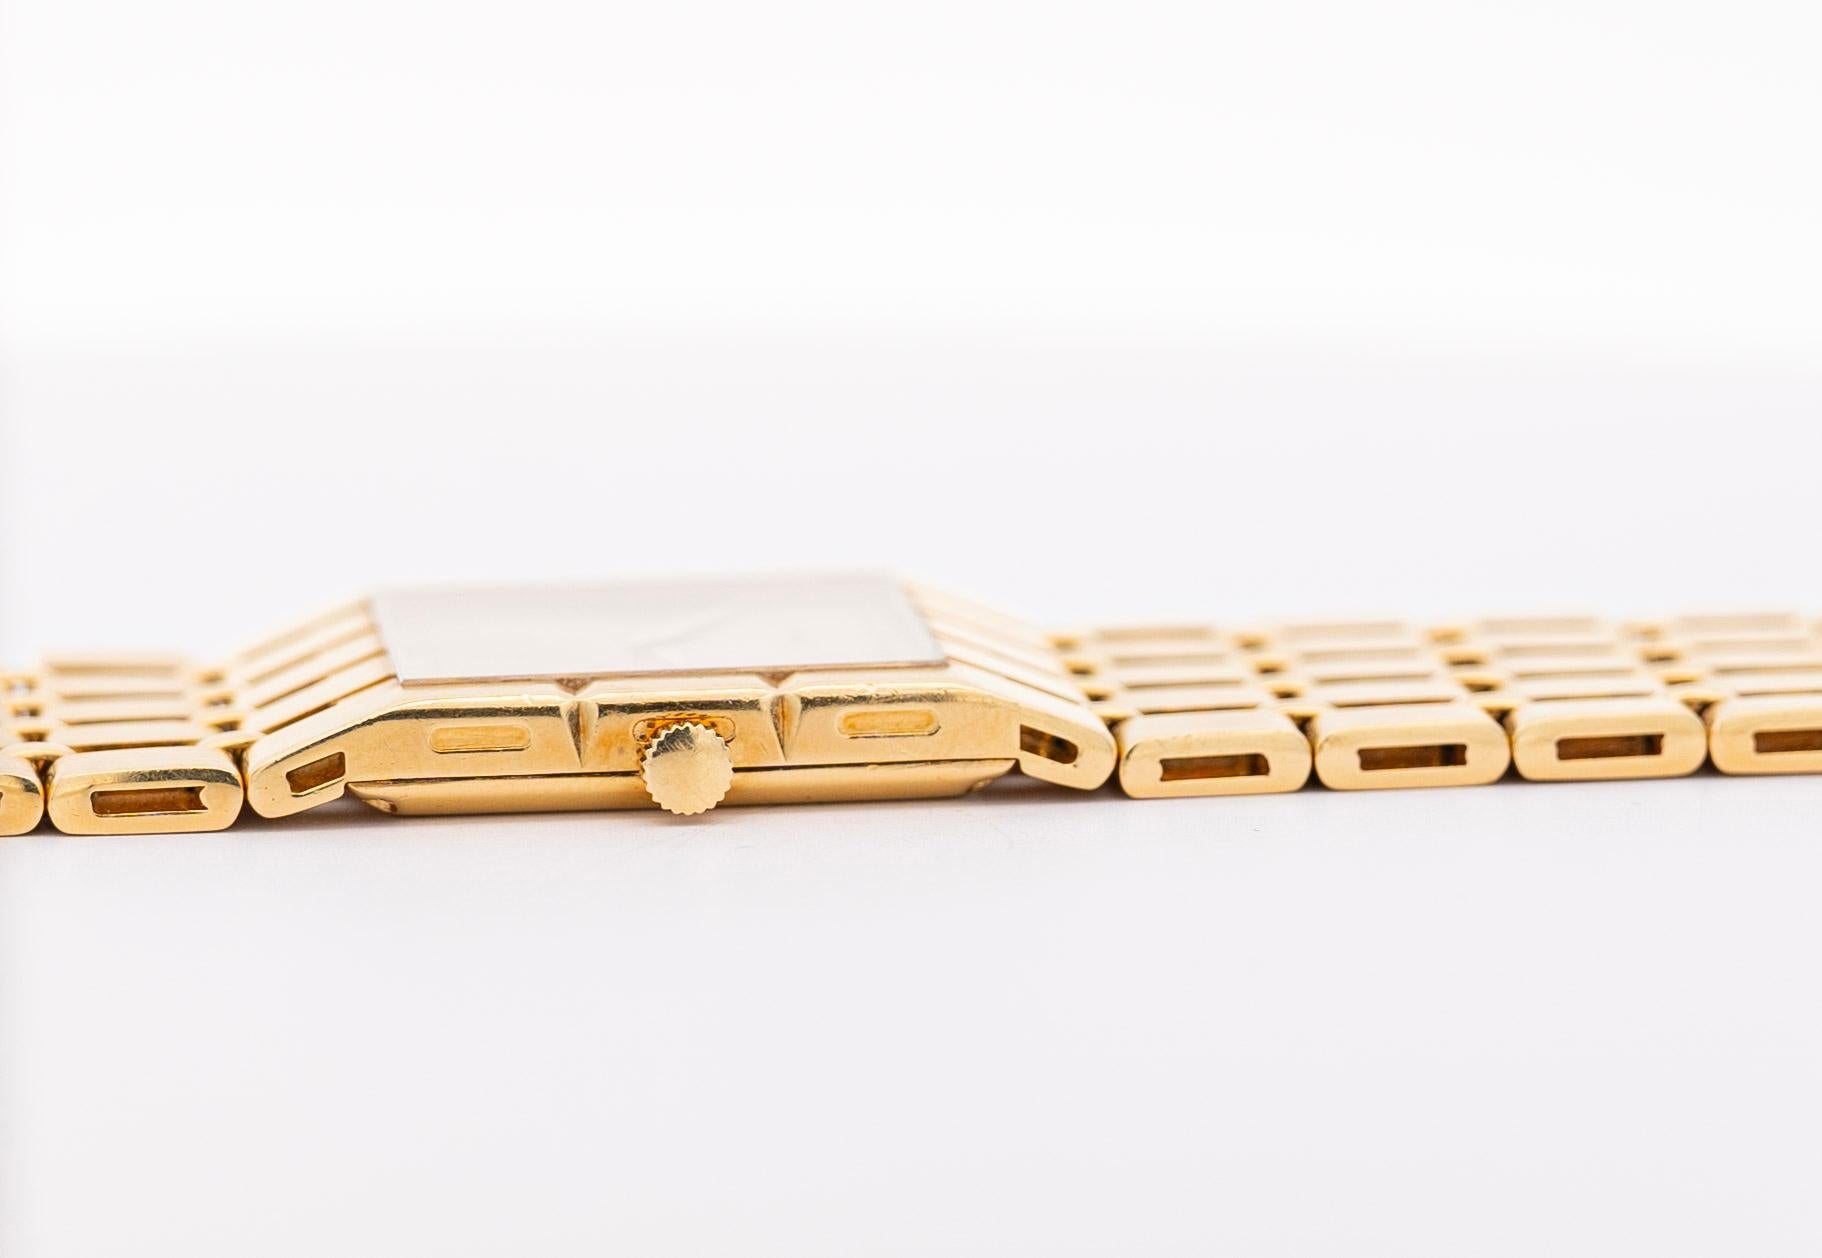 Piaget Polo 91321-K51 montre automatique vintage en or 18 carats 1